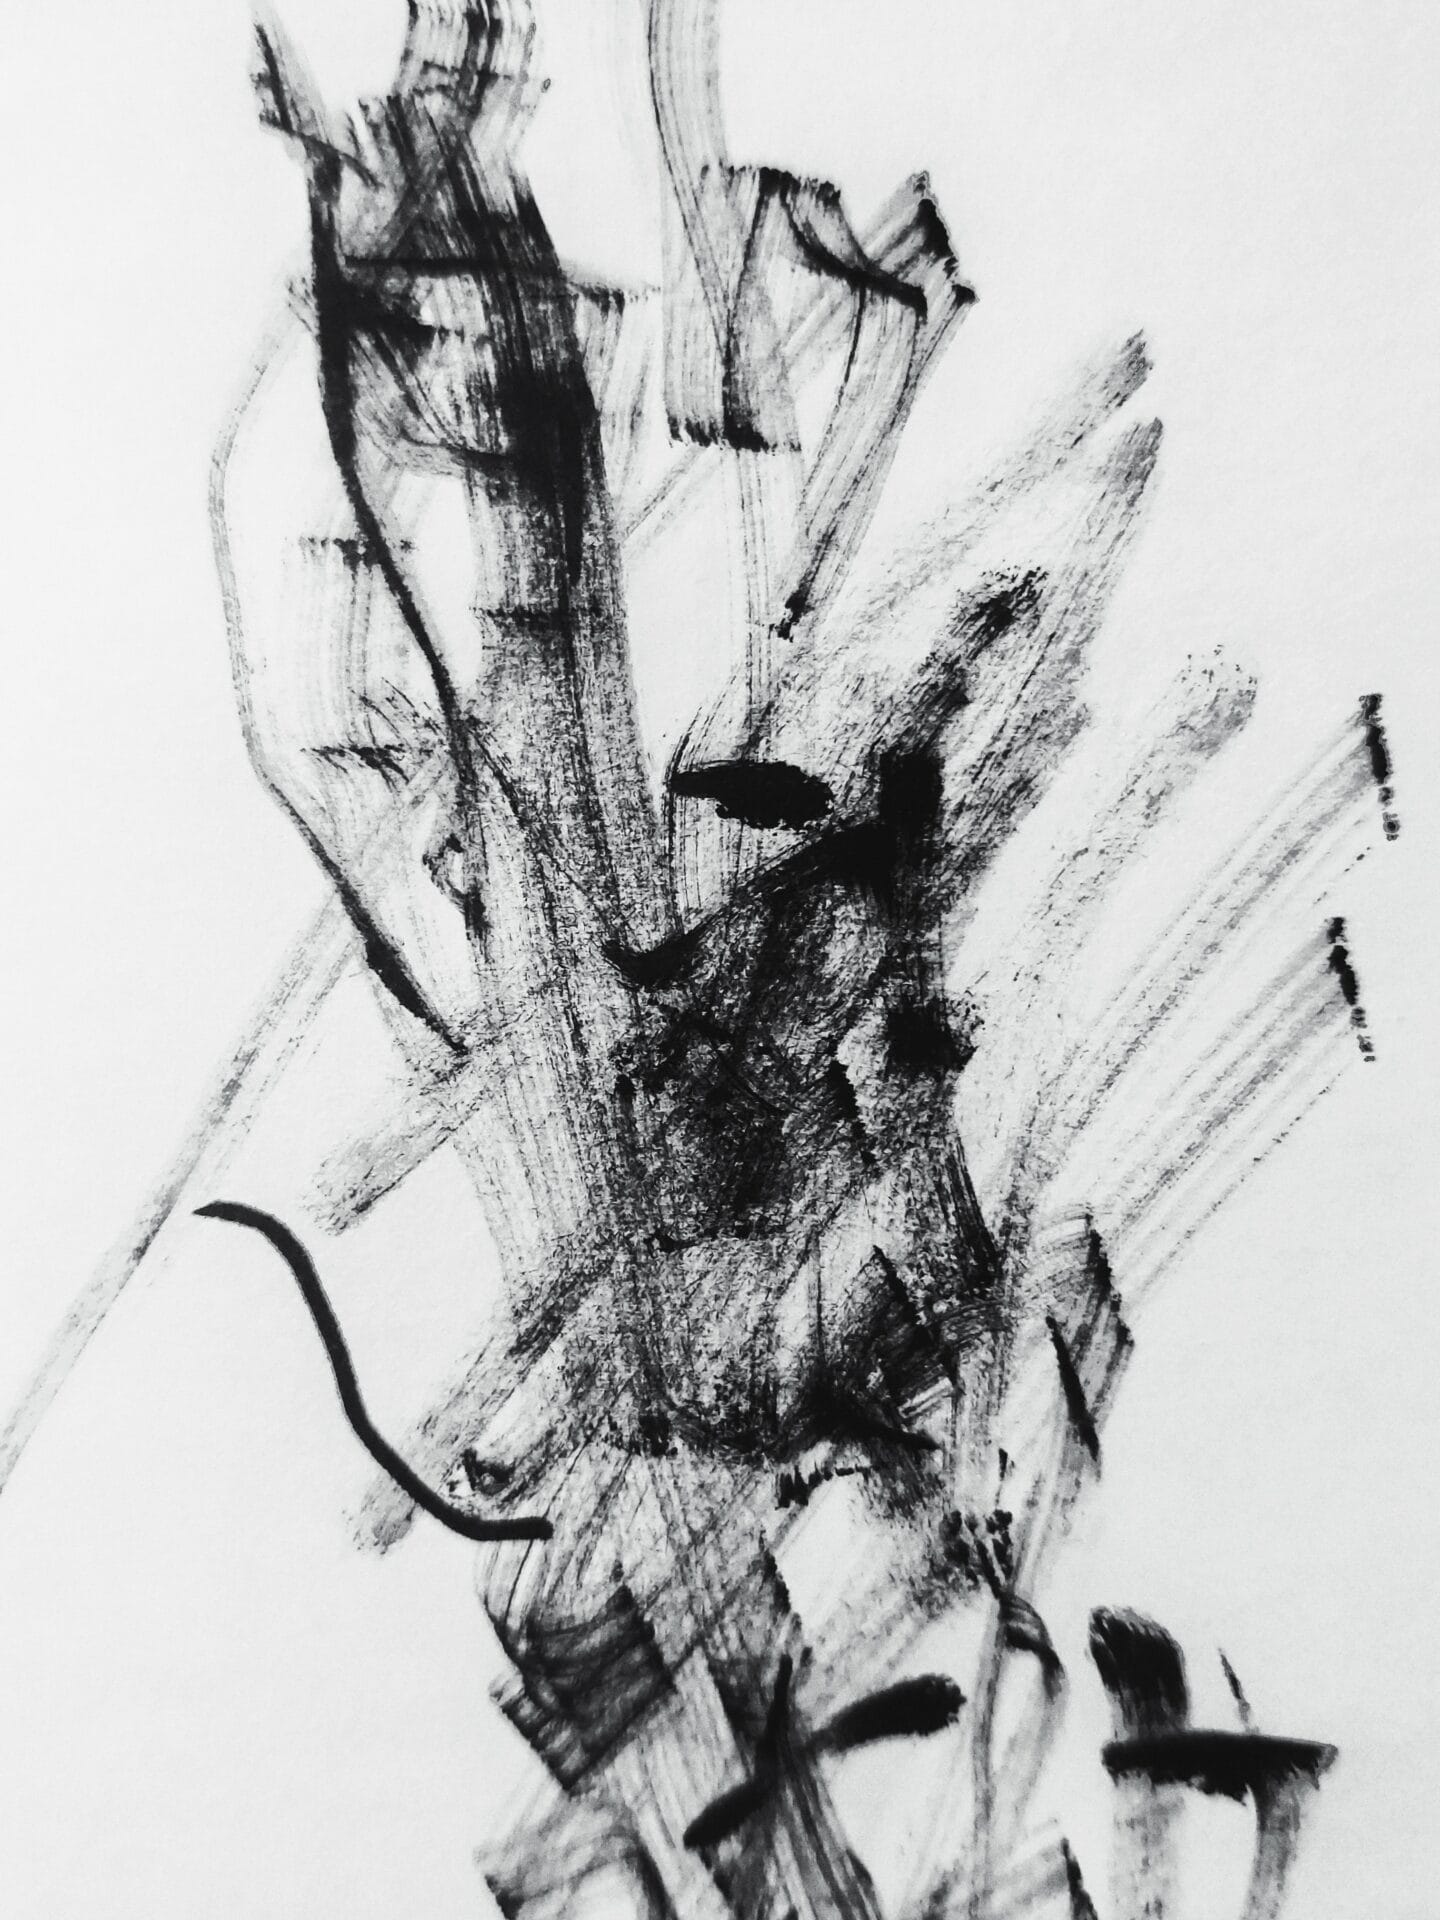 Abstracte afbeelding in zwarte olieverf op een wit linnen doek.